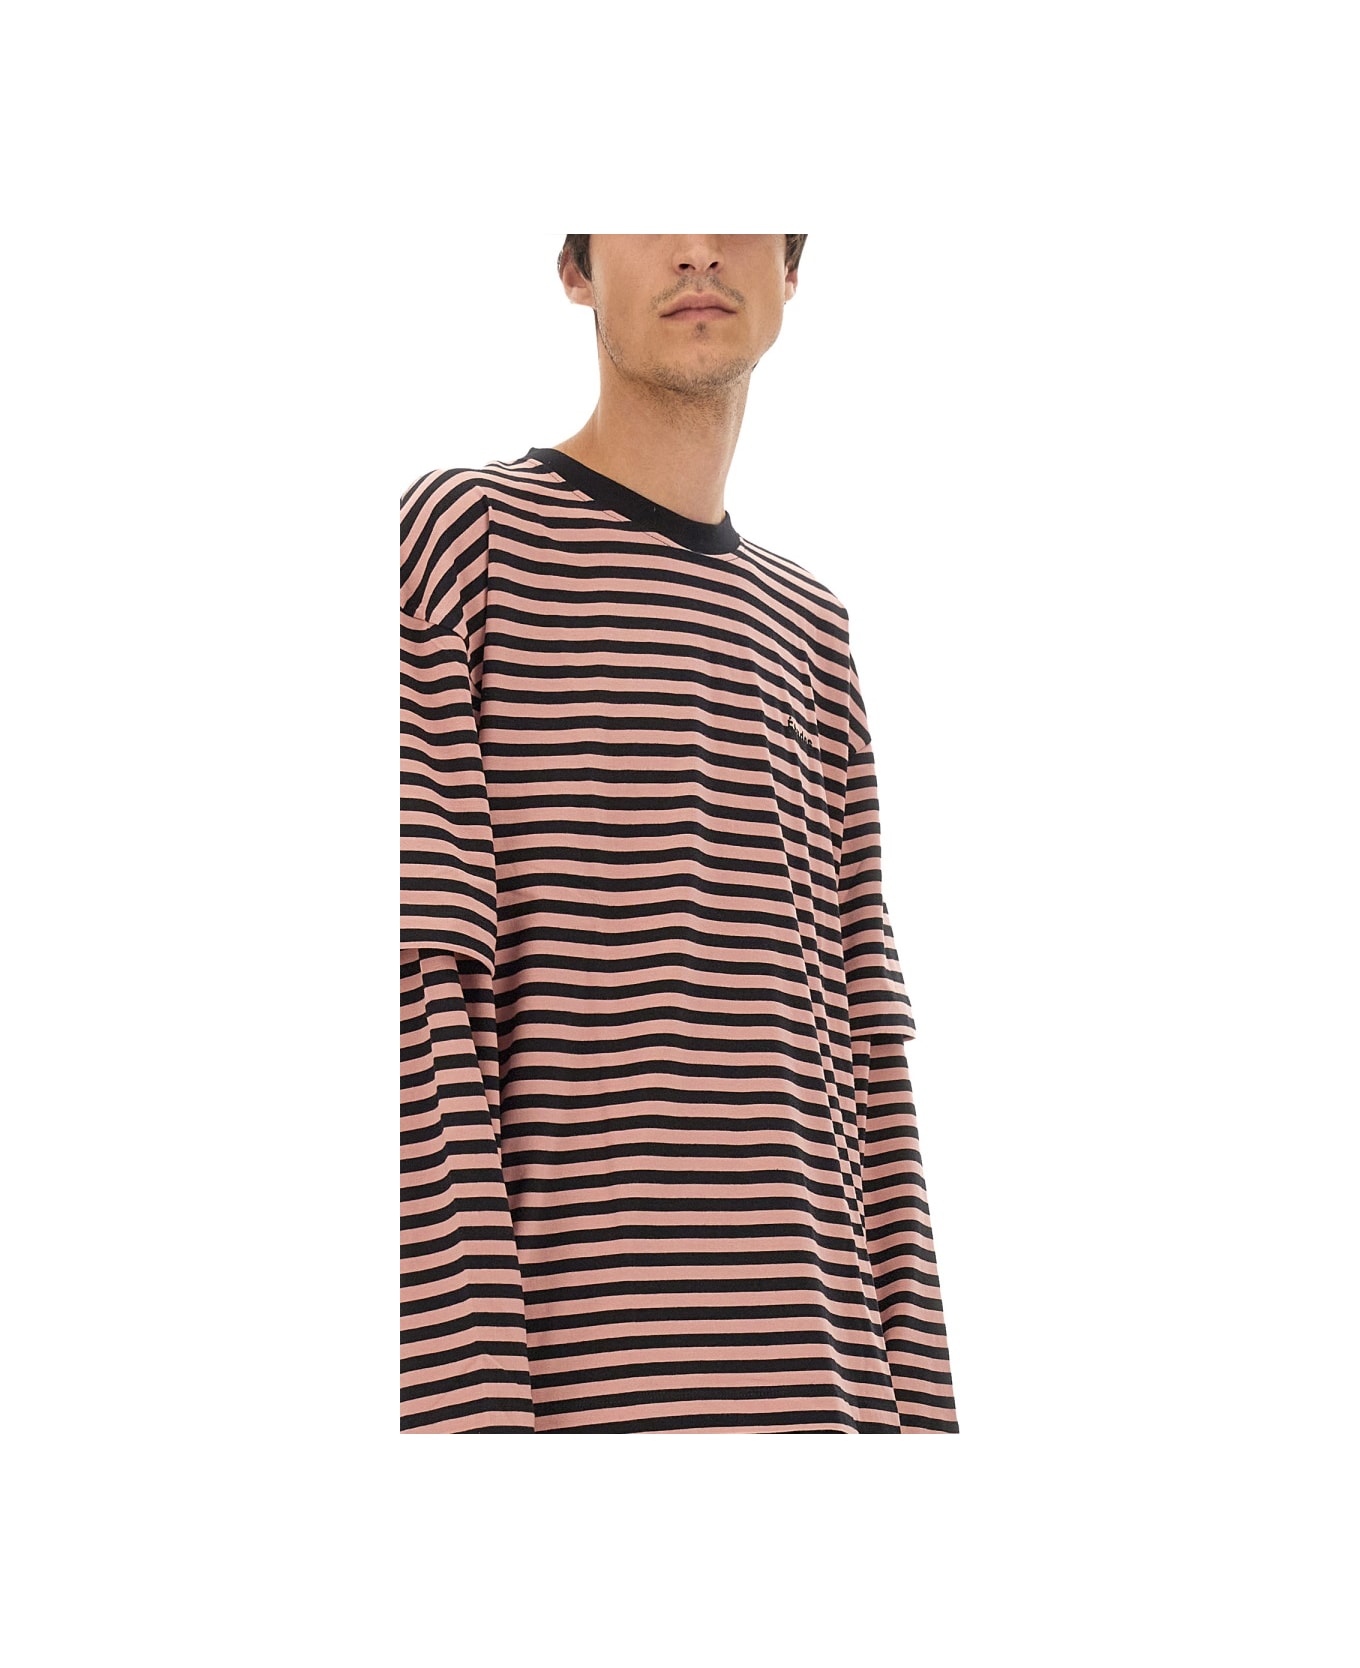 Études T-shirt With Stripe Pattern - MULTICOLOUR シャツ